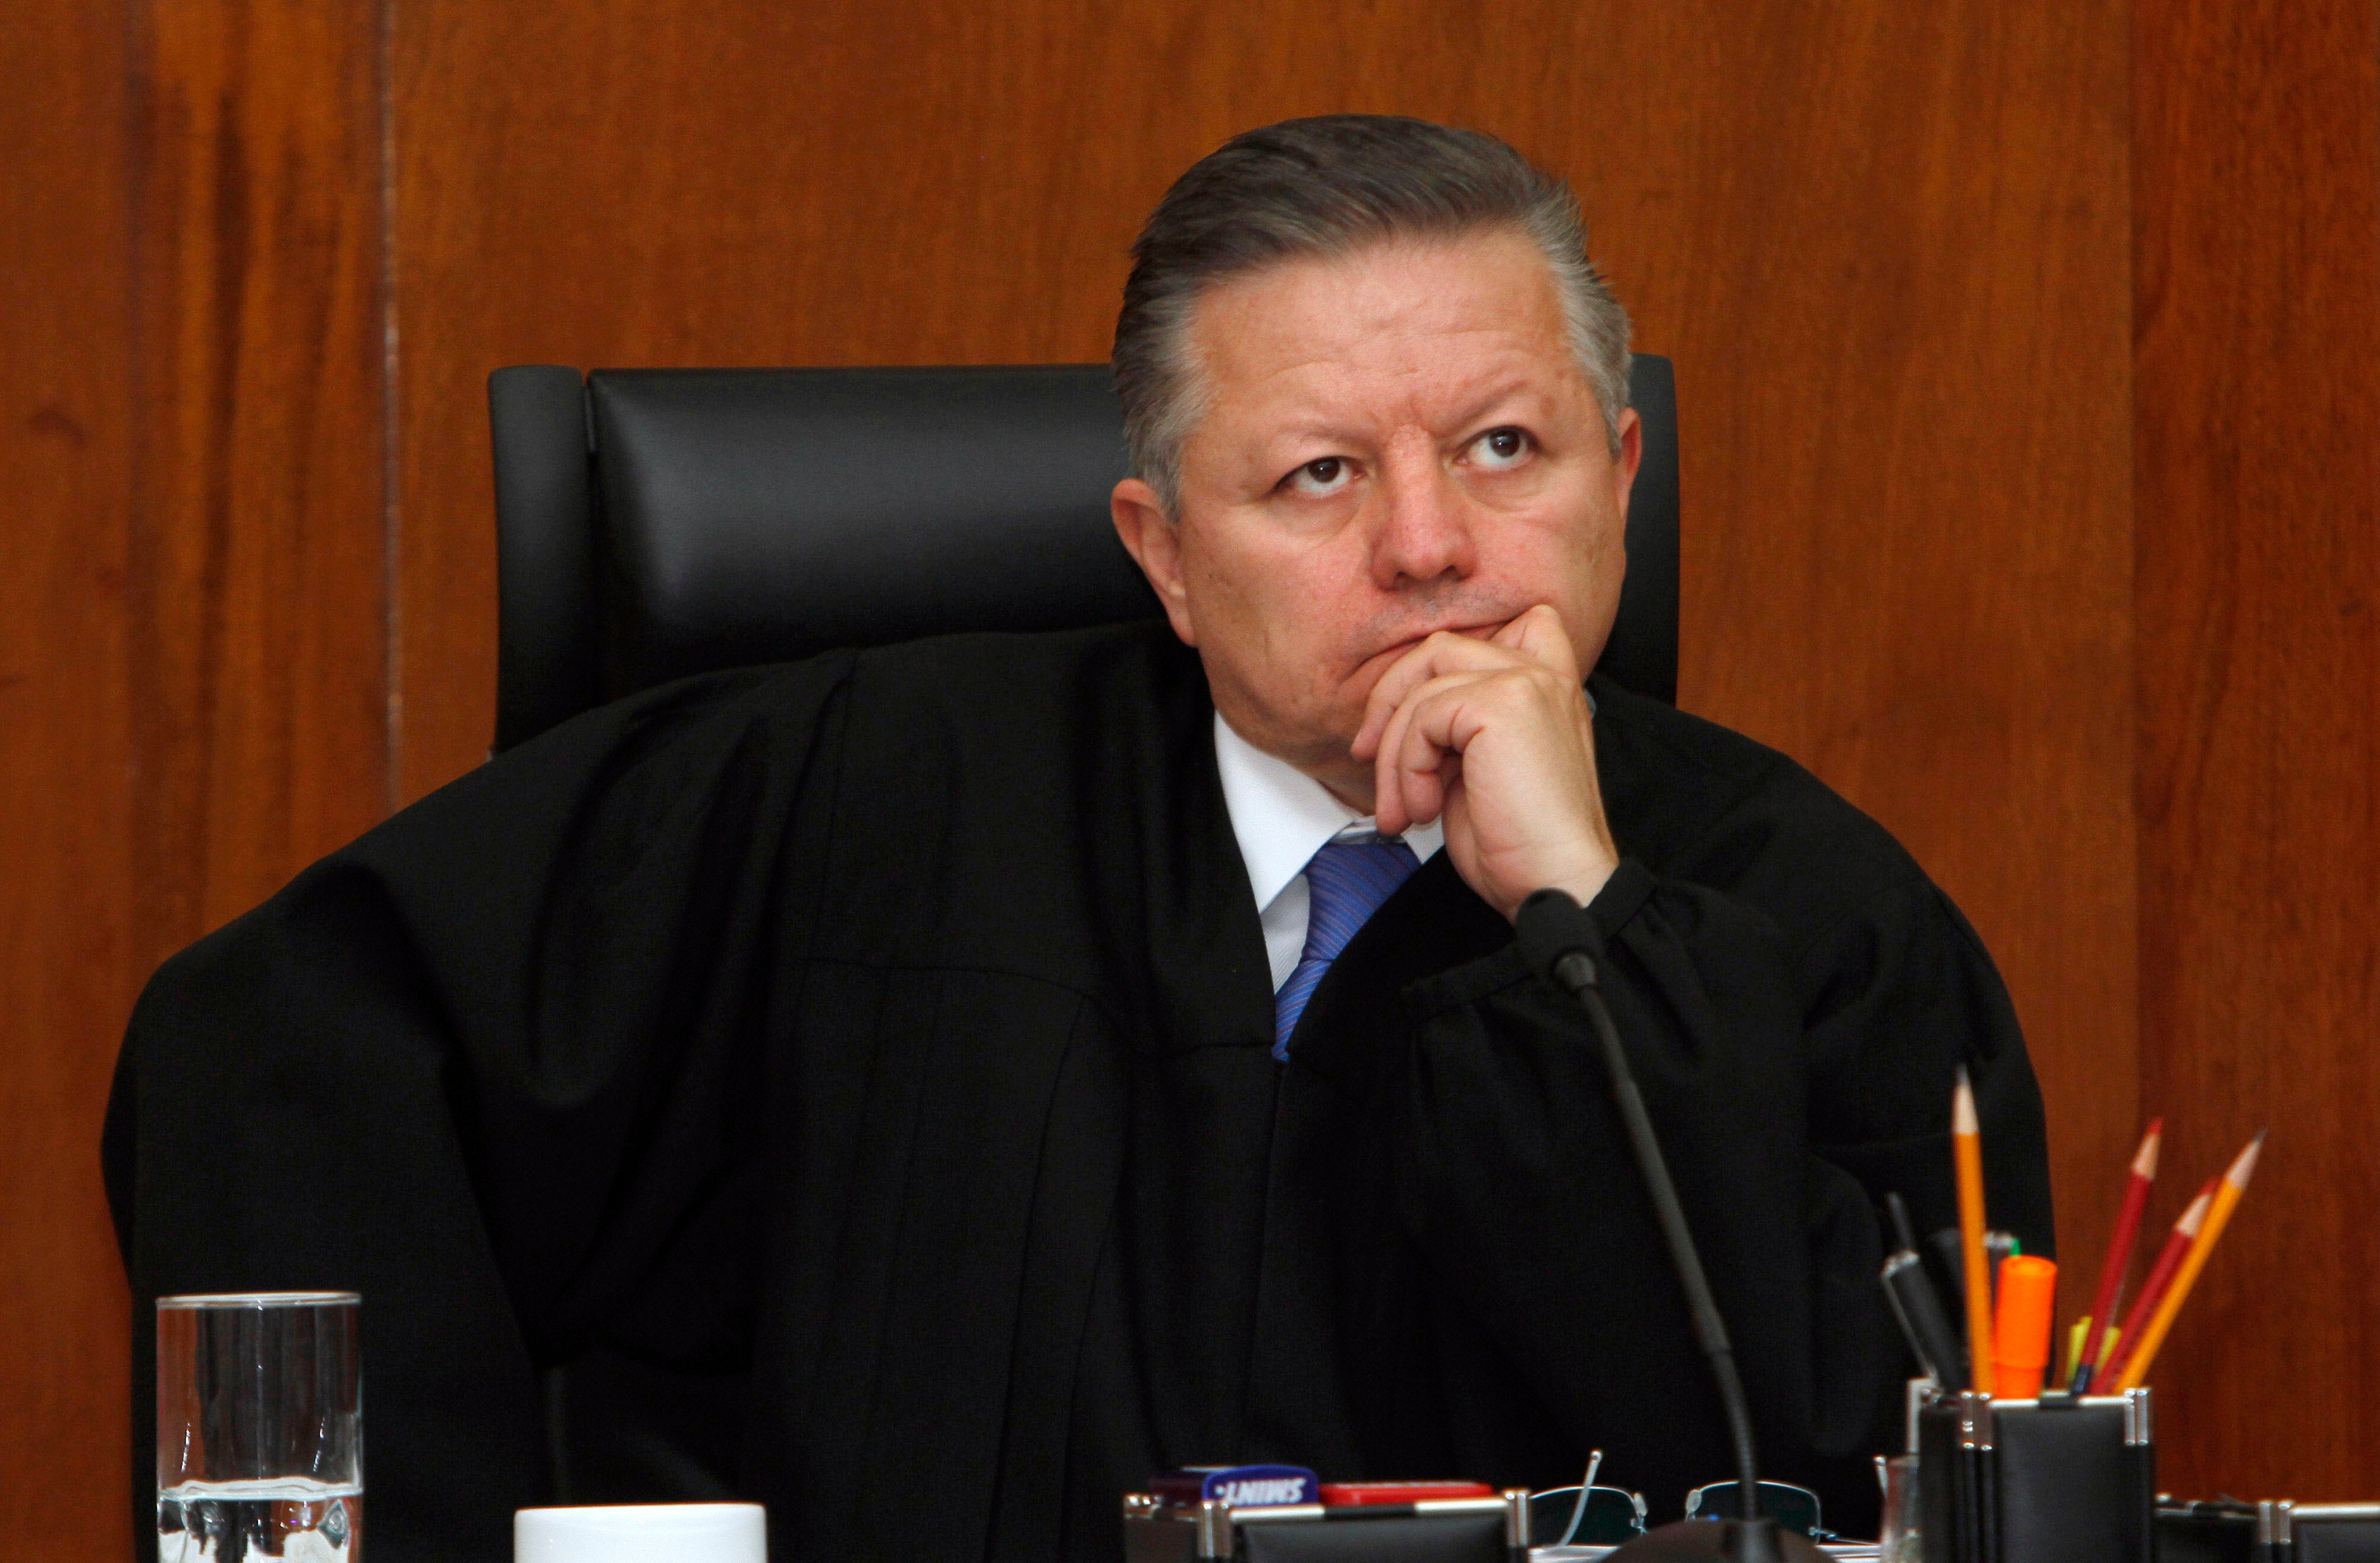 El juez Arturo Zaldívar asiste a una audiencia de la Corte Suprema en la Ciudad de México el 21 de marzo de 2012.